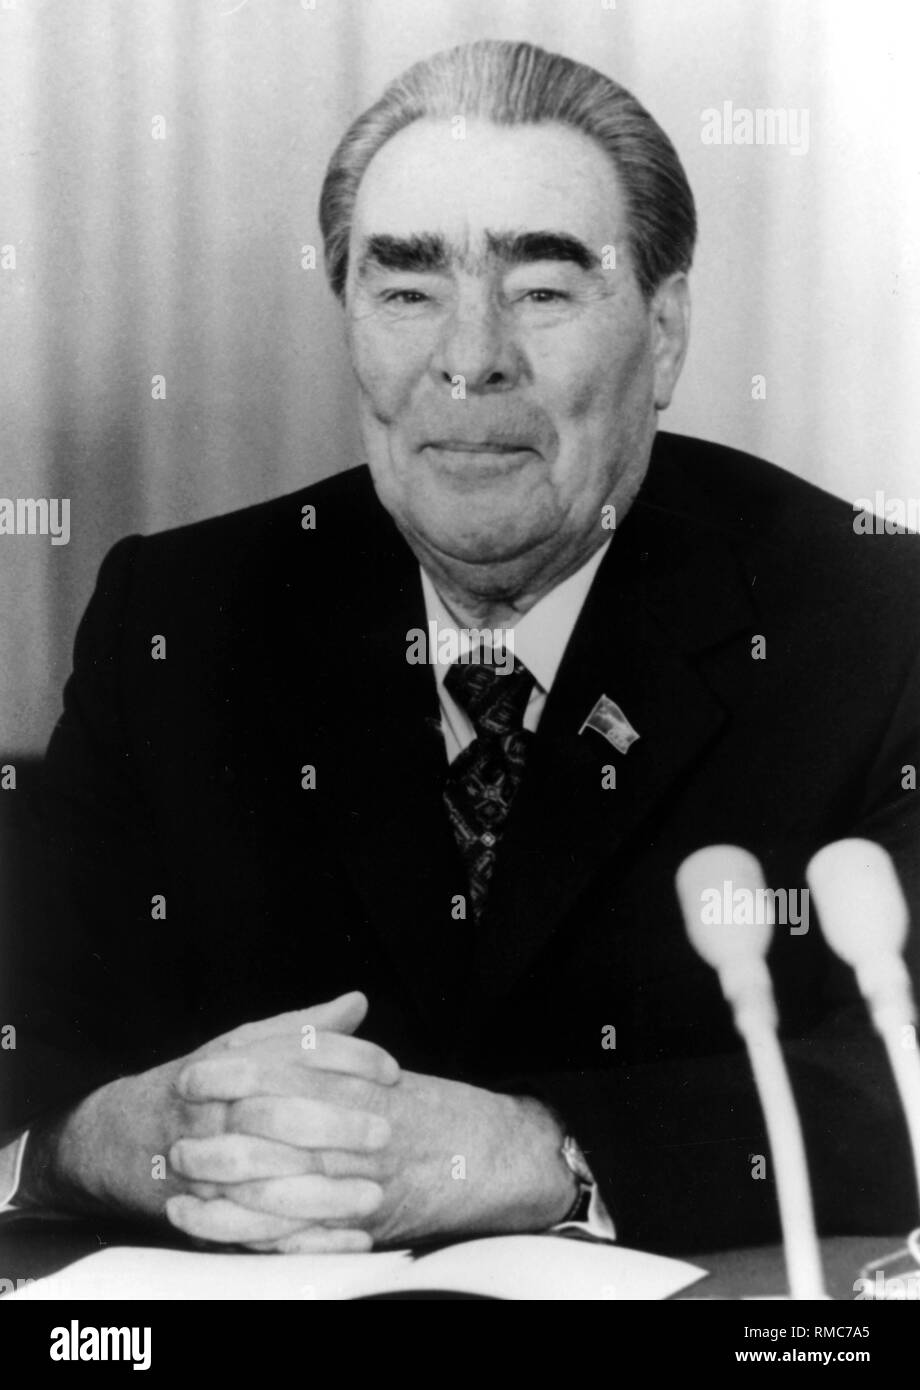 Leonid Iljitsch Breschnew - 19.12.1906 - 10.11.1982. Undatiertes Porträt Foto des sowjetischen Staats- und Parteichef auf einer Pressekonferenz in Bonn, 1981. Zwischen 1964-1982 war er Generalsekretär der KPDSU. Zwischen 1960-1964 und 1977 - 1982 Präsident der Sowjetunion. Stockfoto